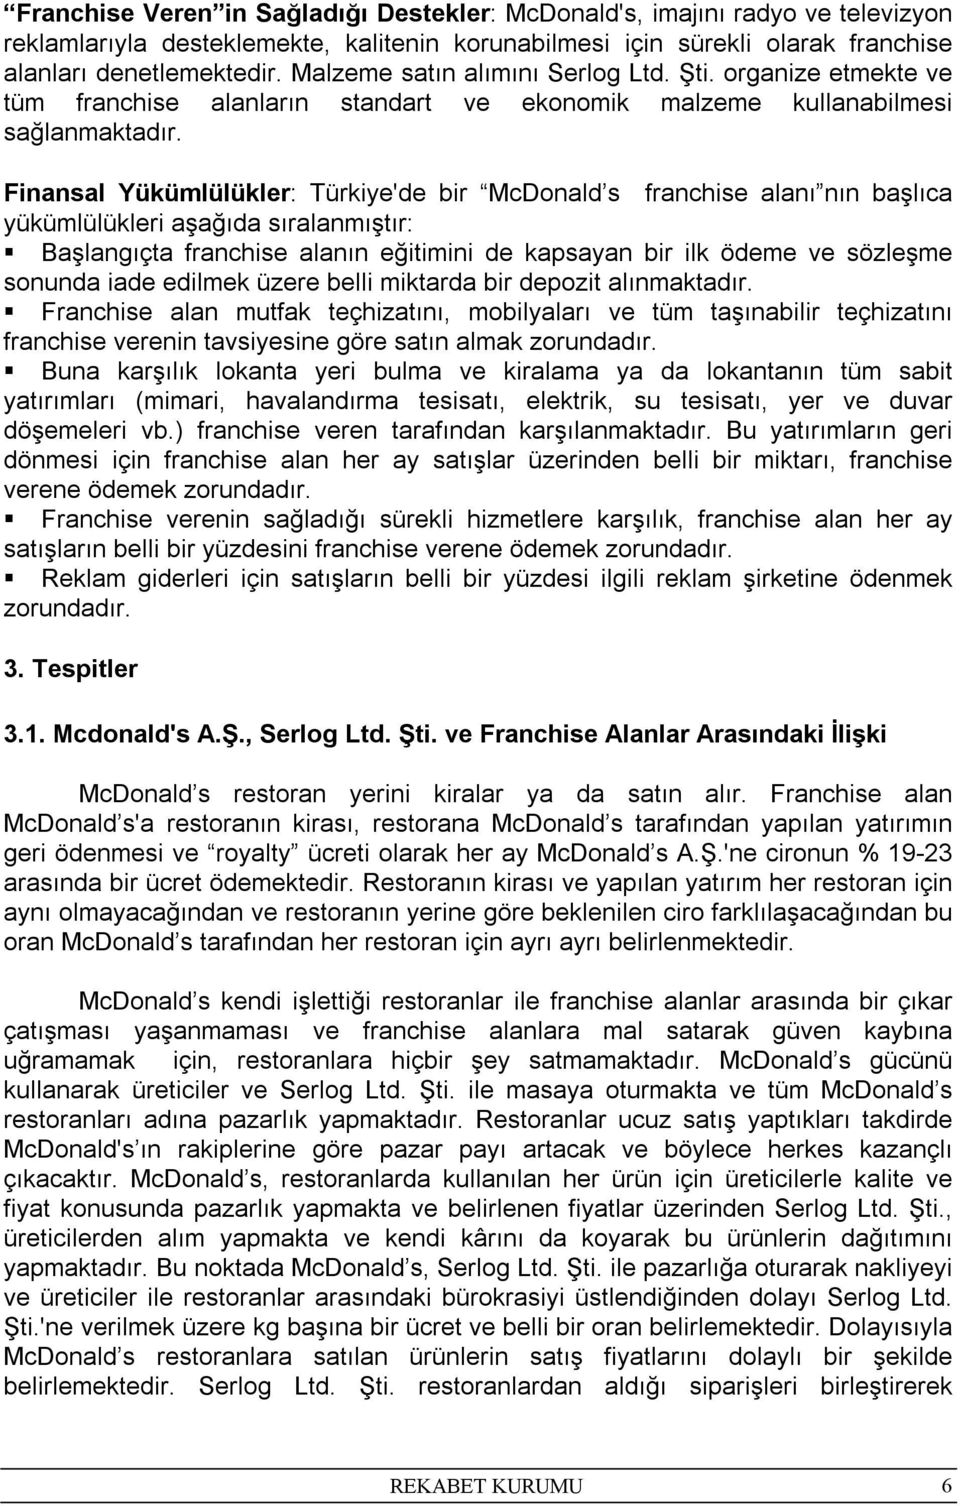 Finansal Yükümlülükler: Türkiye'de bir McDonald s franchise alanı nın başlıca yükümlülükleri aşağıda sıralanmıştır: Başlangıçta franchise alanın eğitimini de kapsayan bir ilk ödeme ve sözleşme